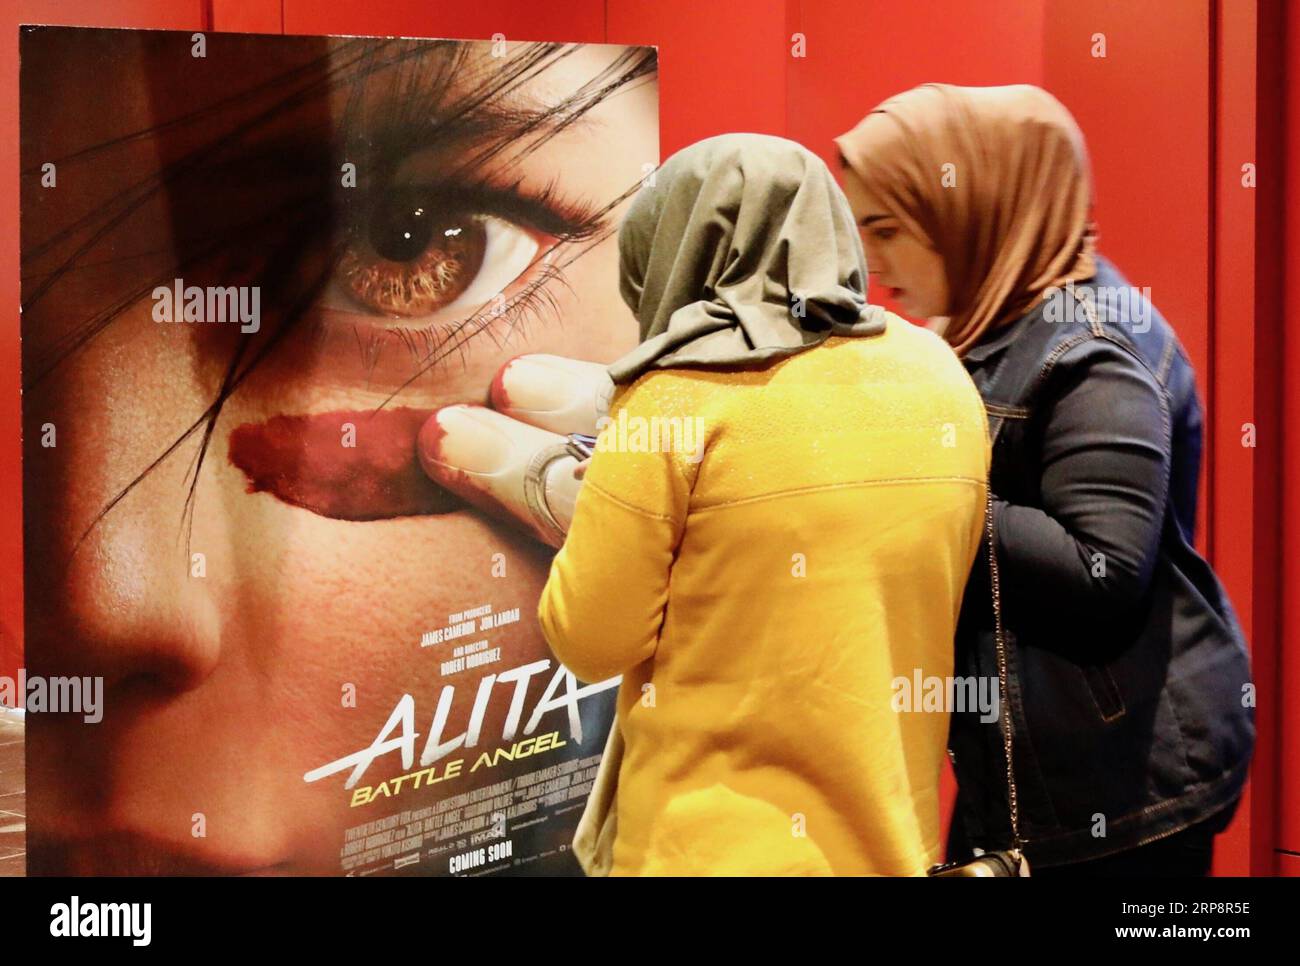 (190313) -- BAGDAD, 13. März 2019 (Xinhua) -- Foto aufgenommen am 21. Februar 2019 zeigt zwei irakische Frauen neben einem Filmplakat in einem Kino in Bagdad, Irak. ZU DEN Features: Moderne Kinos MIT mehreren Bildschirmen ziehen begeisterte irakische Kinobesucher an, während die berühmten Kinos (Xinhua/Khalil Dawood) IRAK-BAGDAD-KINO PUBLICATIONxNOTxINxCHN verschwinden Stockfoto